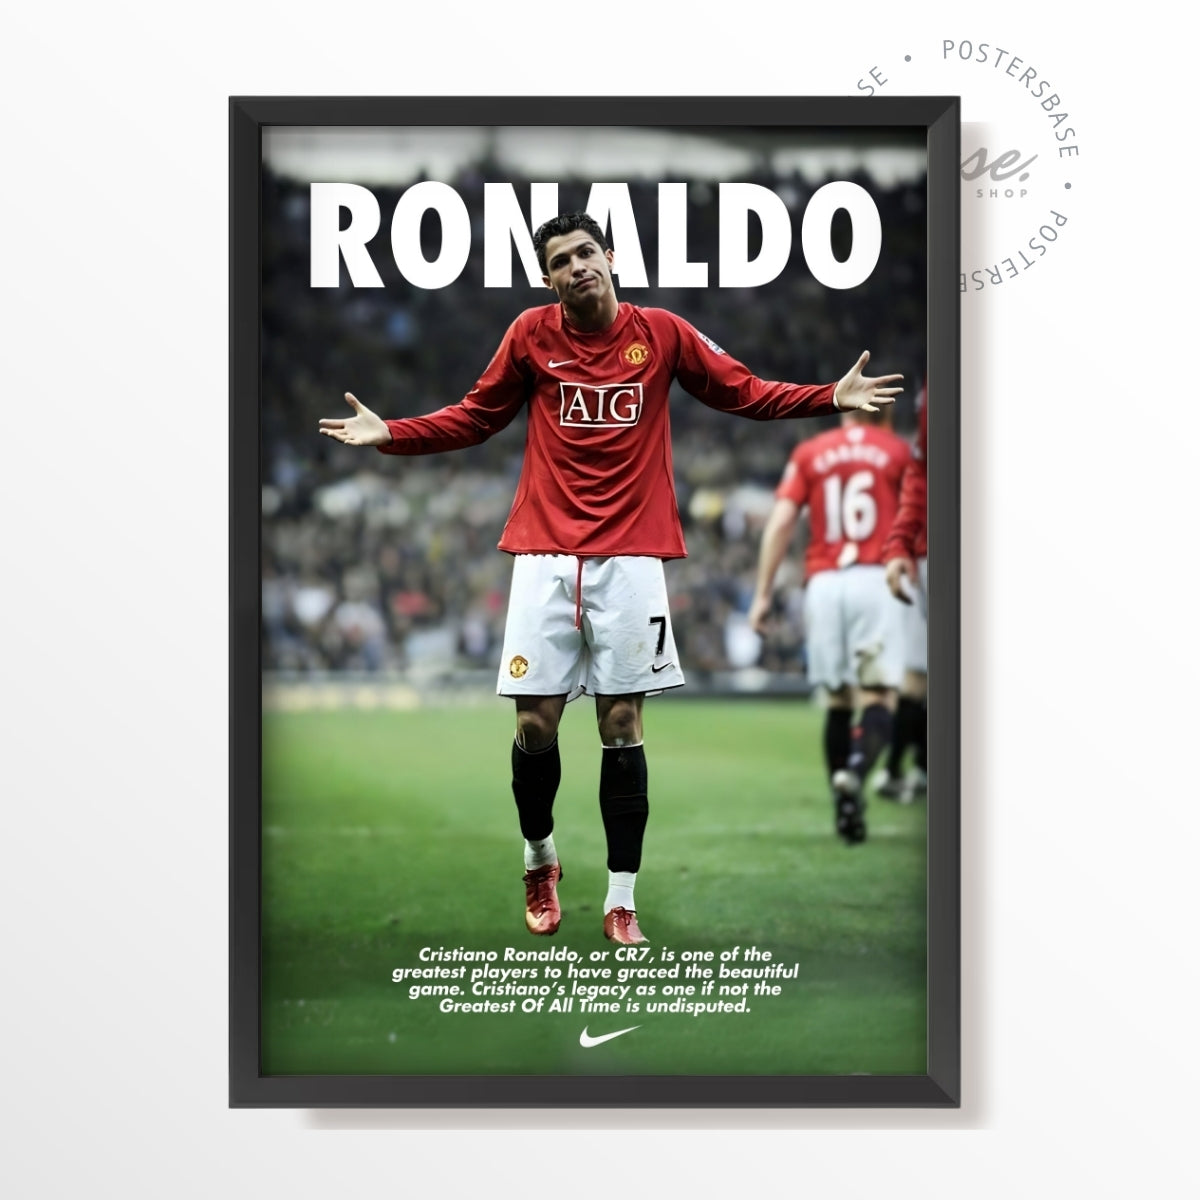 Cristiano Ronaldo or CR7